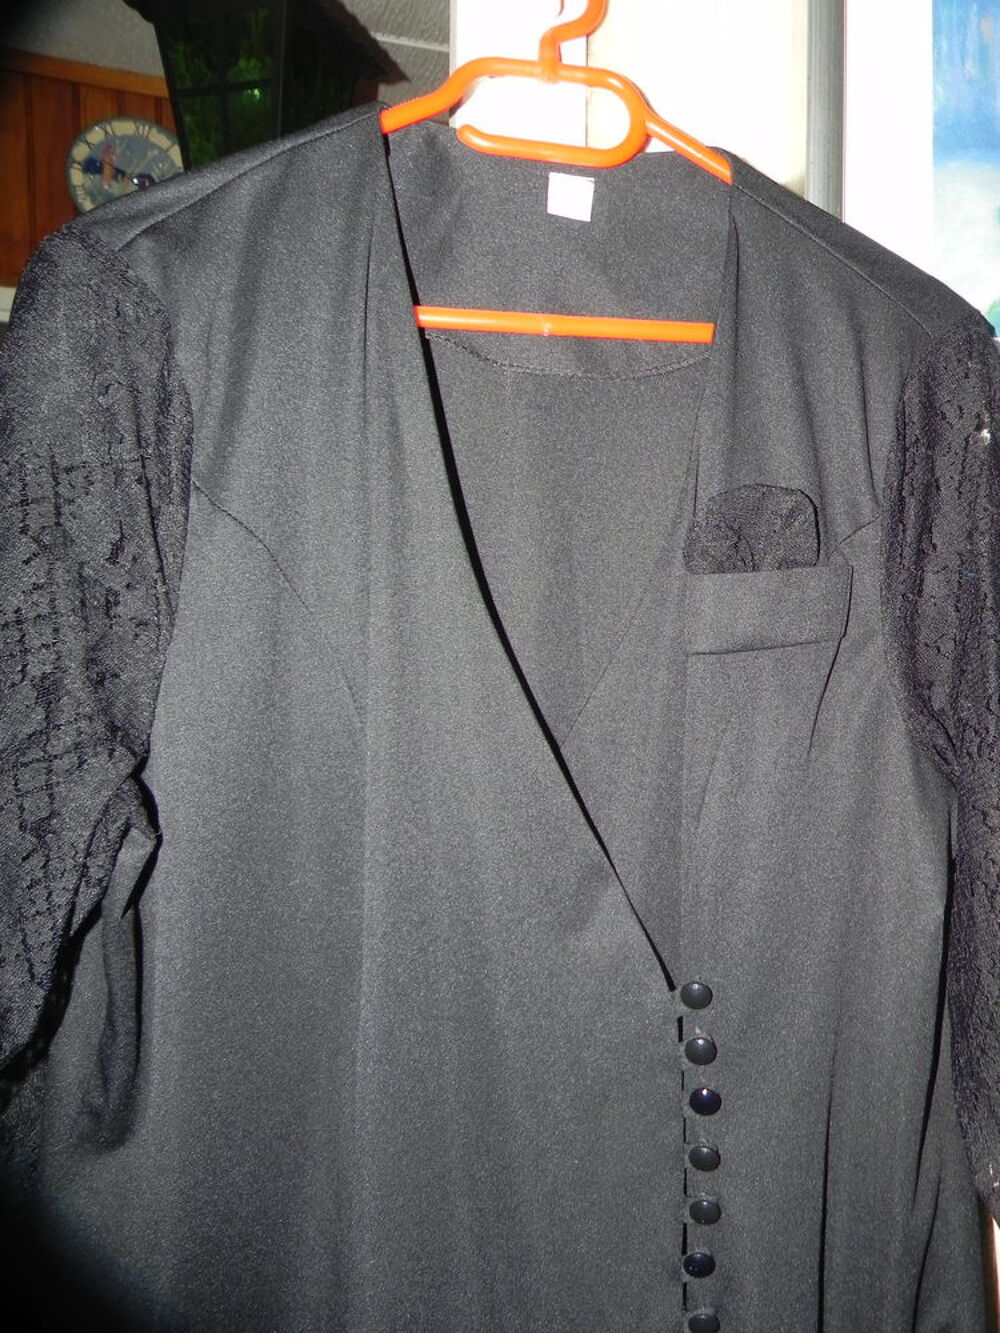 Robe noire avec manches longues en dentelle, taille 48. Vtements